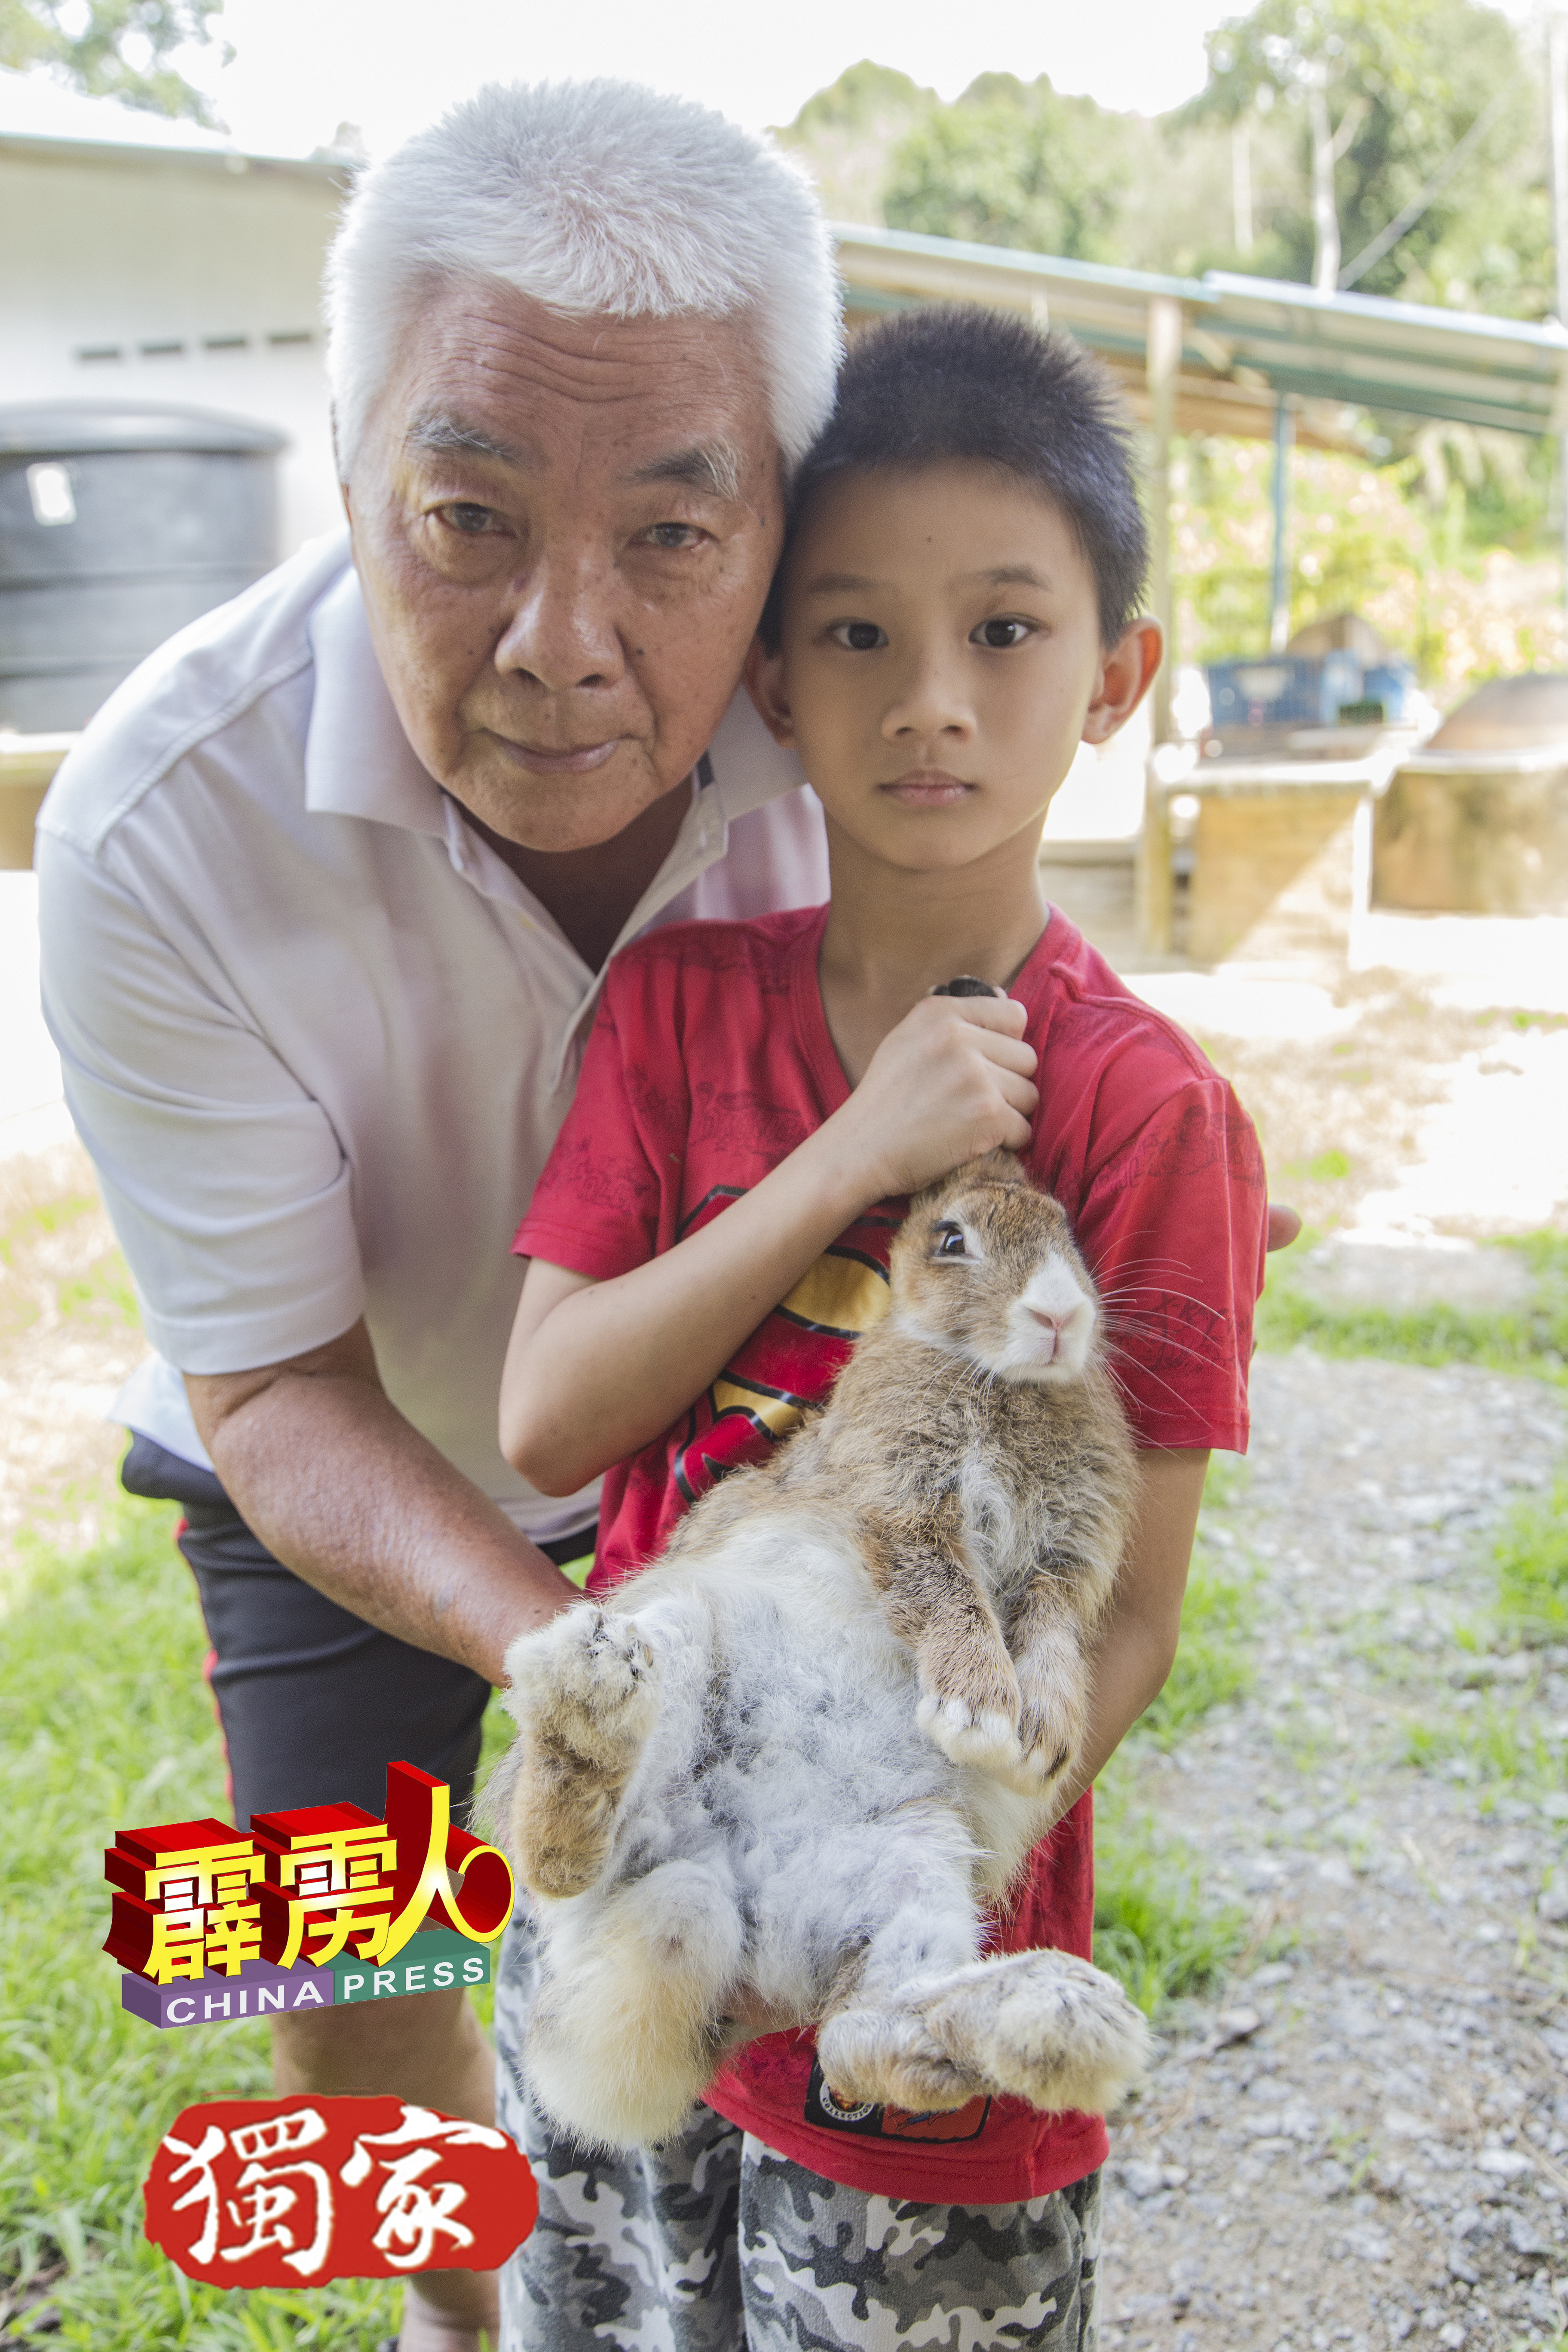 梁德坤（左）与昌敬爷孙俩，经常到农场与小灰玩乐。